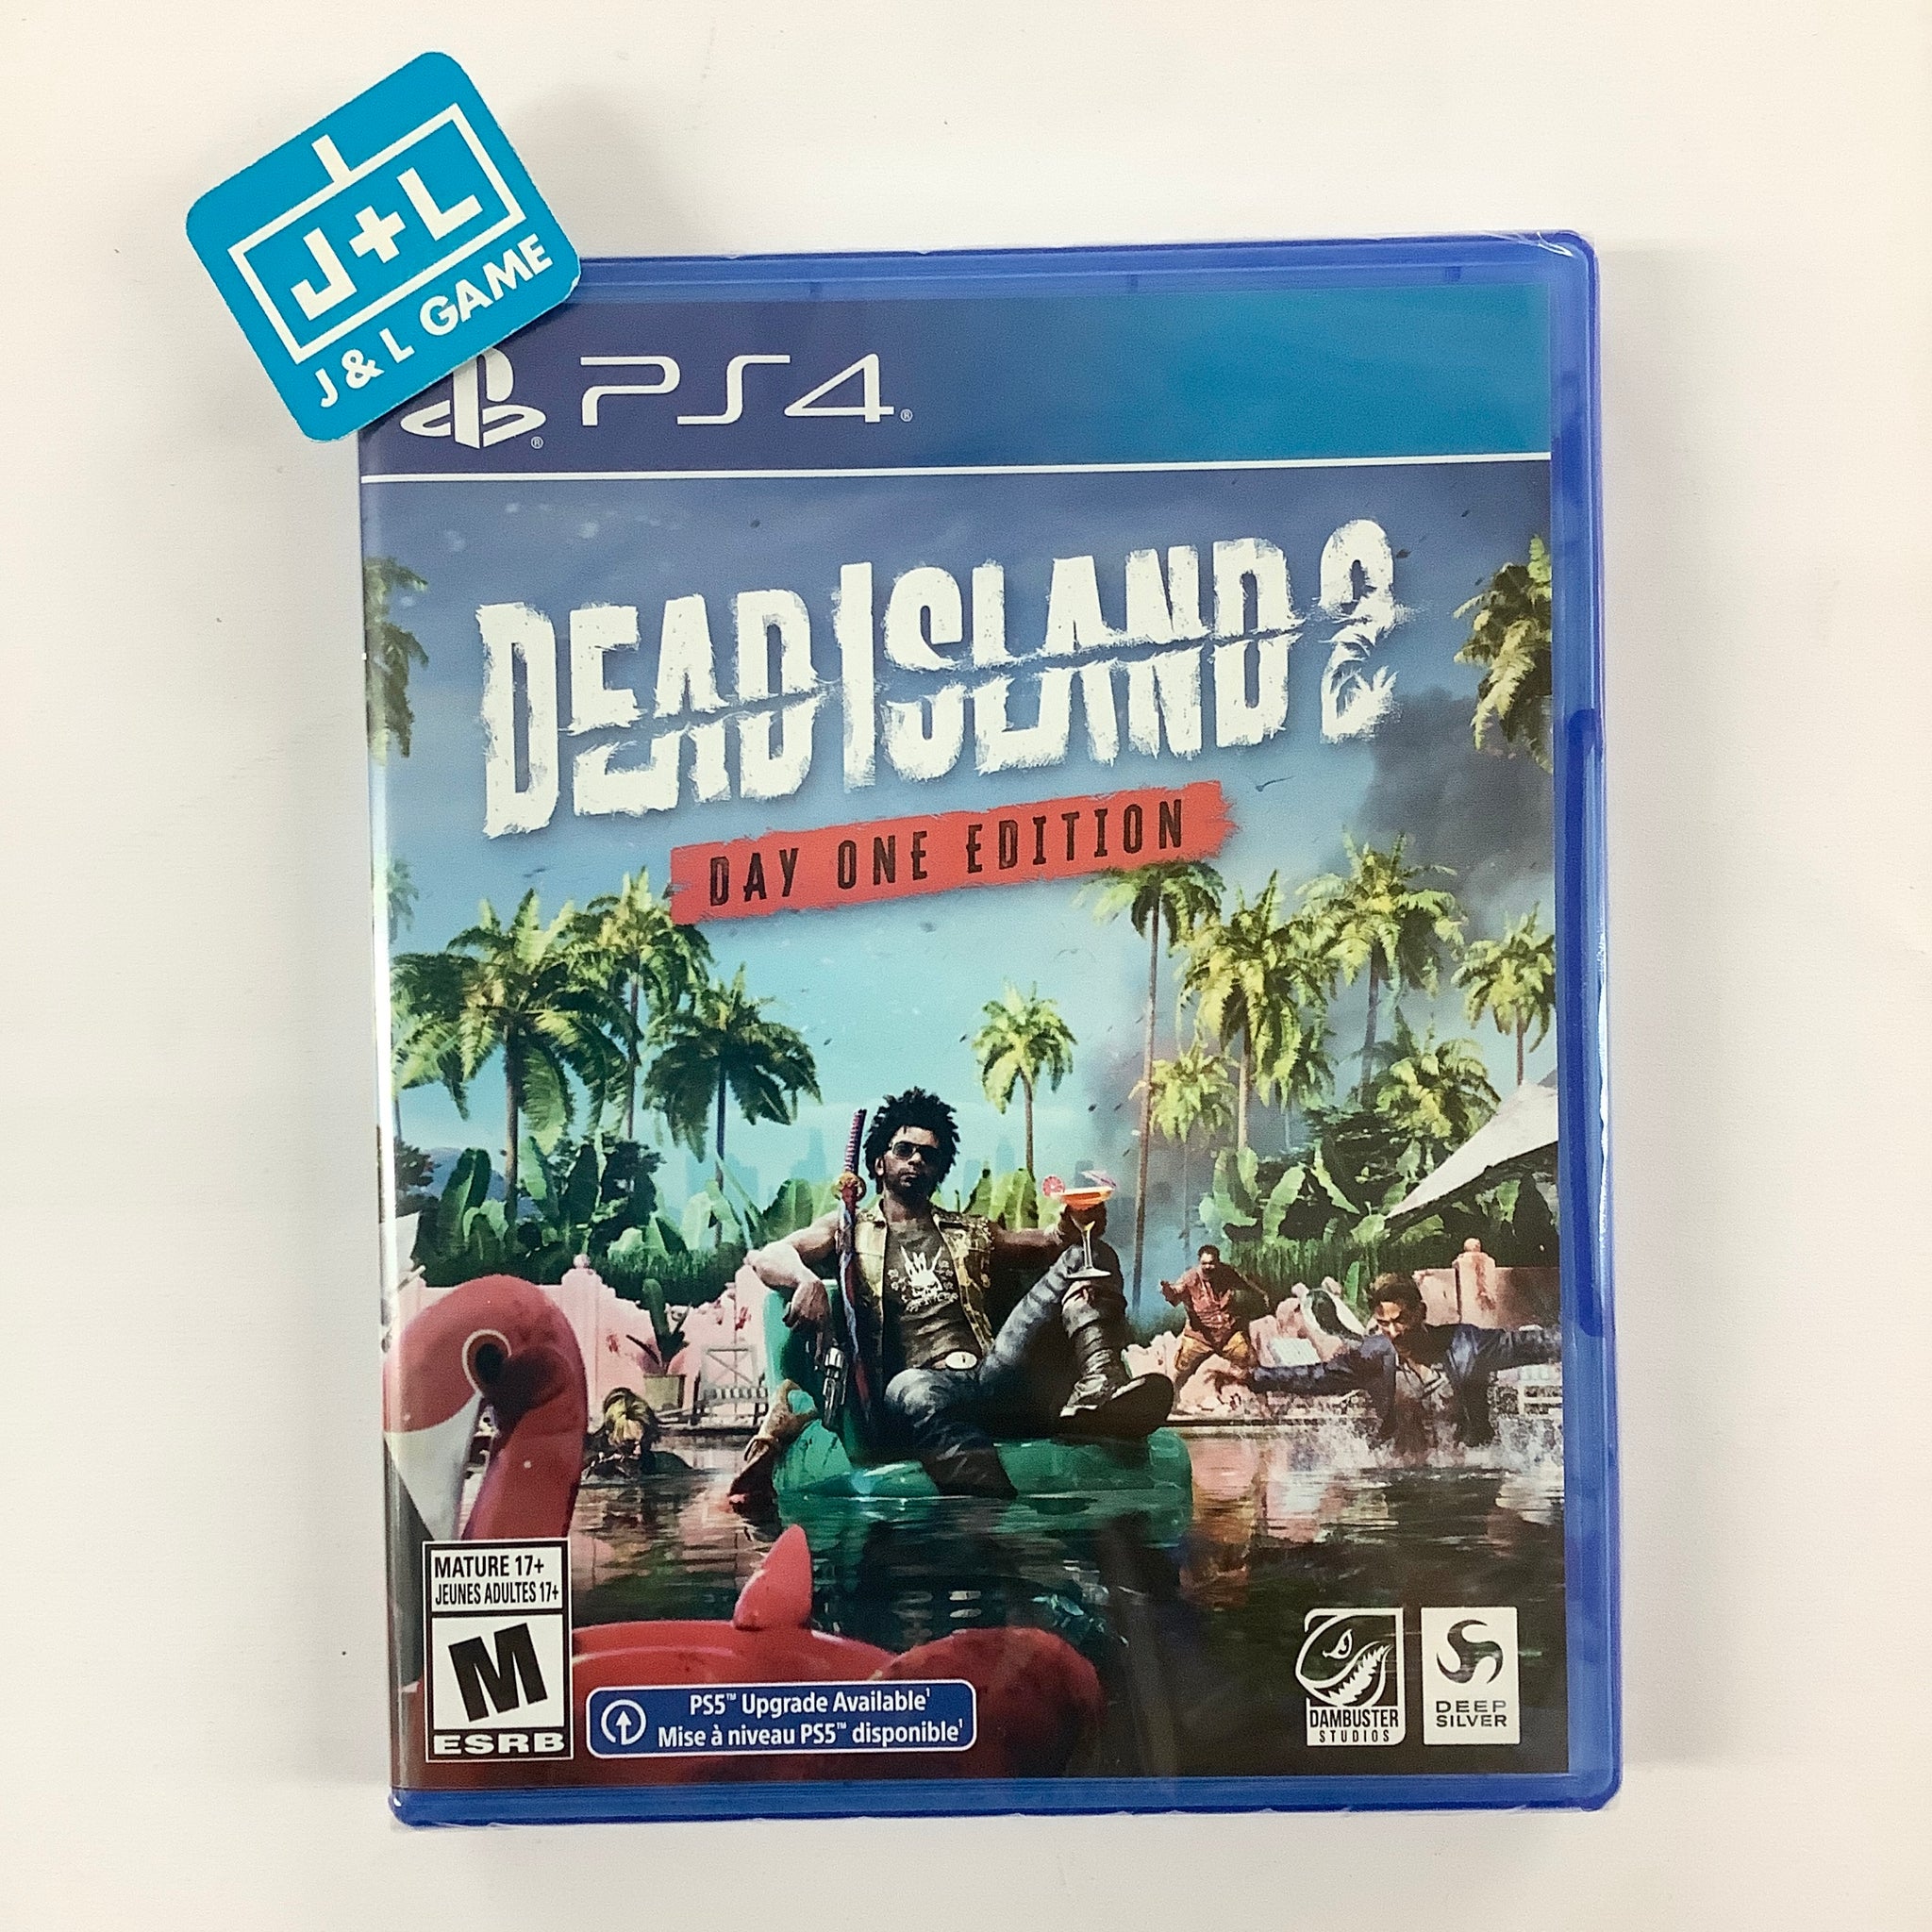 Buy Playstation 4 Ps4 Dead Island 2 Pulp Edition